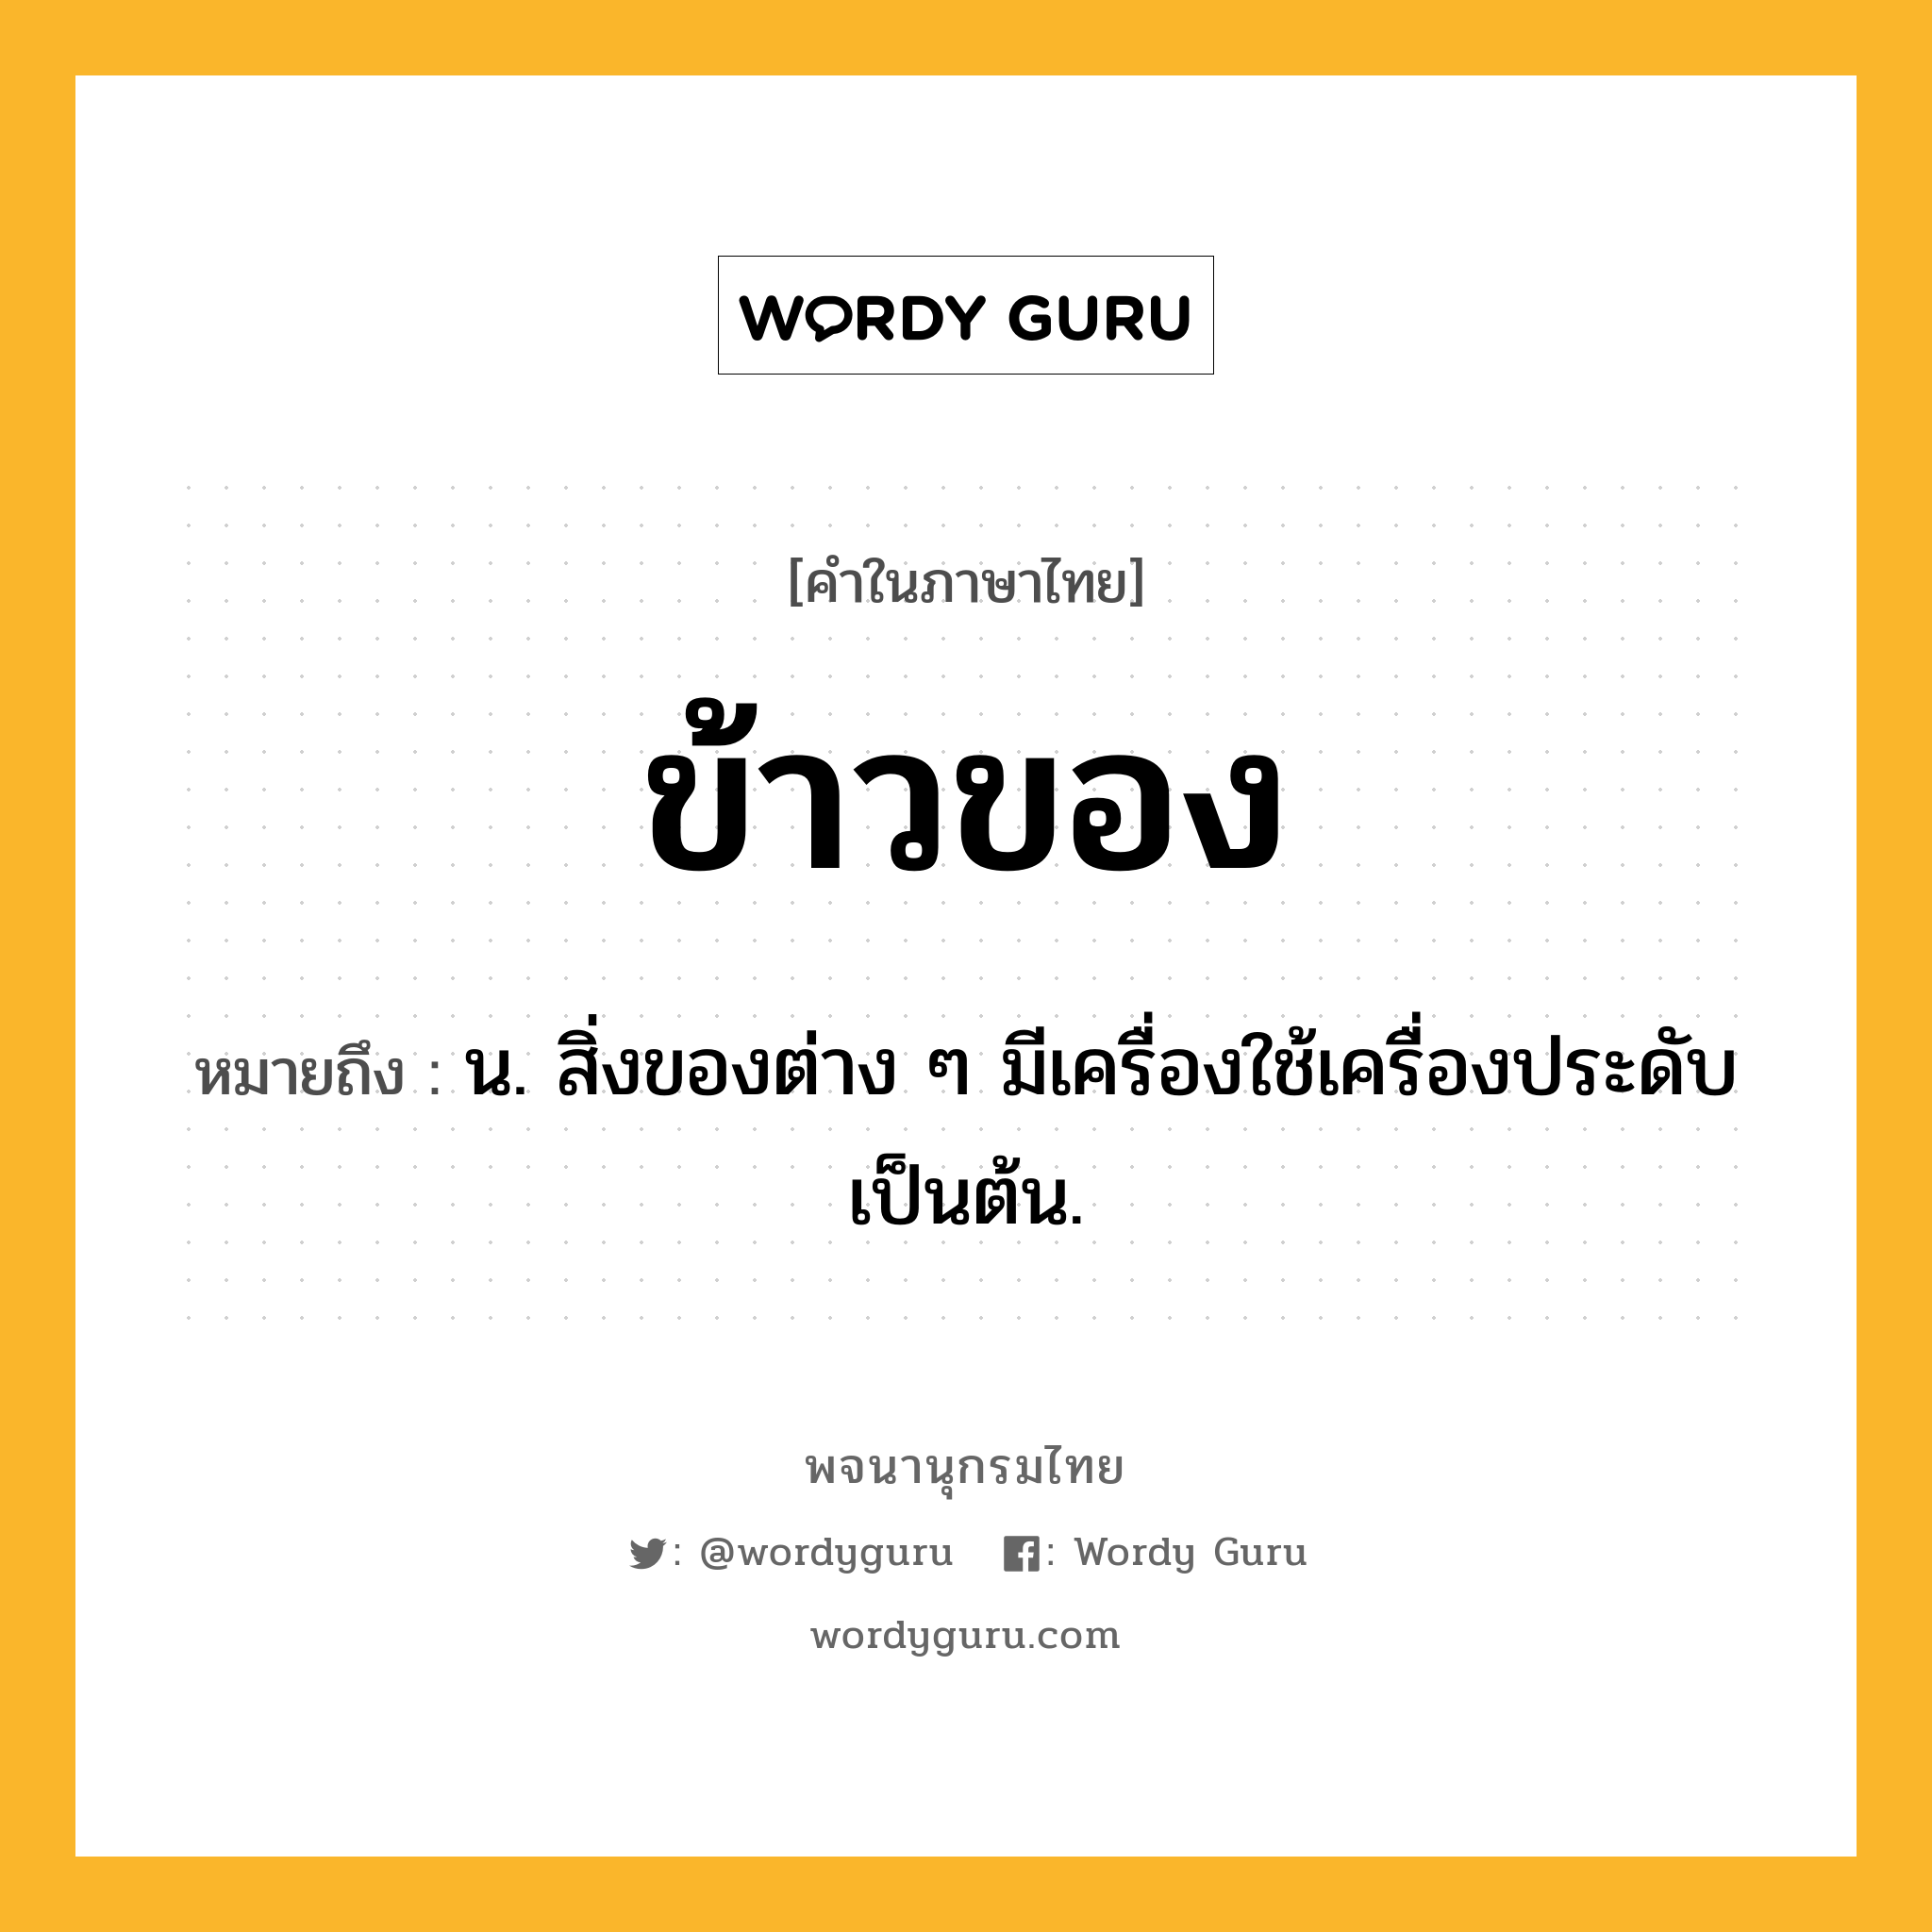 ข้าวของ ความหมาย หมายถึงอะไร?, คำในภาษาไทย ข้าวของ หมายถึง น. สิ่งของต่าง ๆ มีเครื่องใช้เครื่องประดับเป็นต้น.